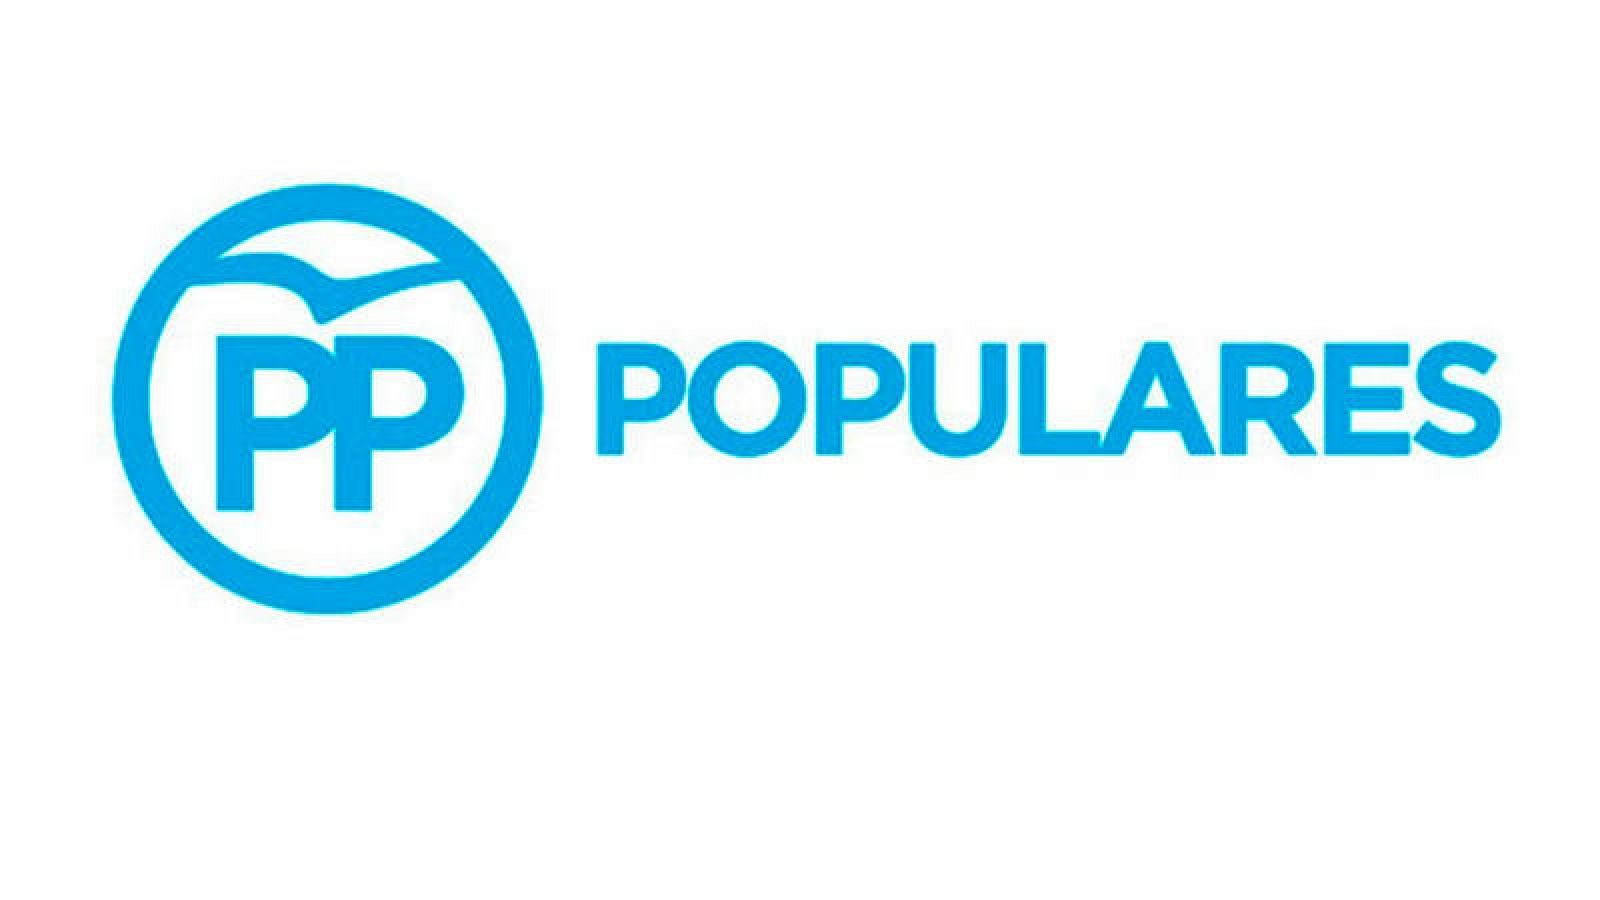 Es oficial: el logo del PP es un charrán l RTVE